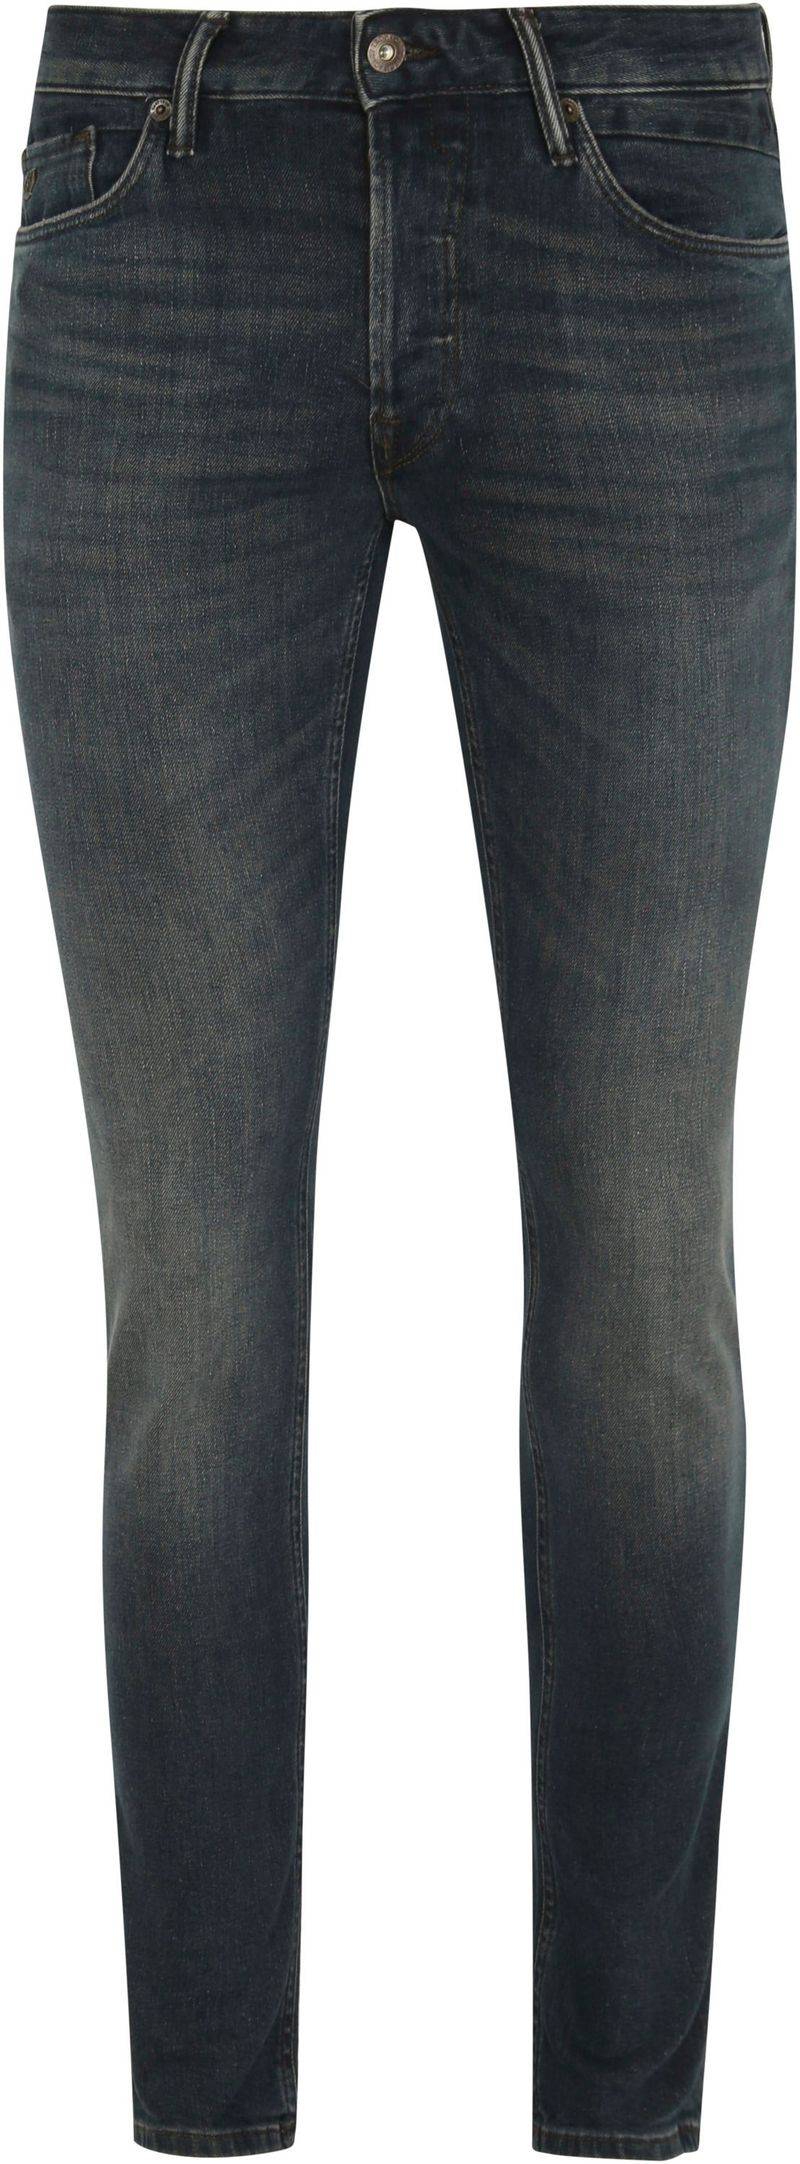 Cast Iron Riser Jeans ADW Dunkelblau - Größe W 33 - L 34 von Cast Iron